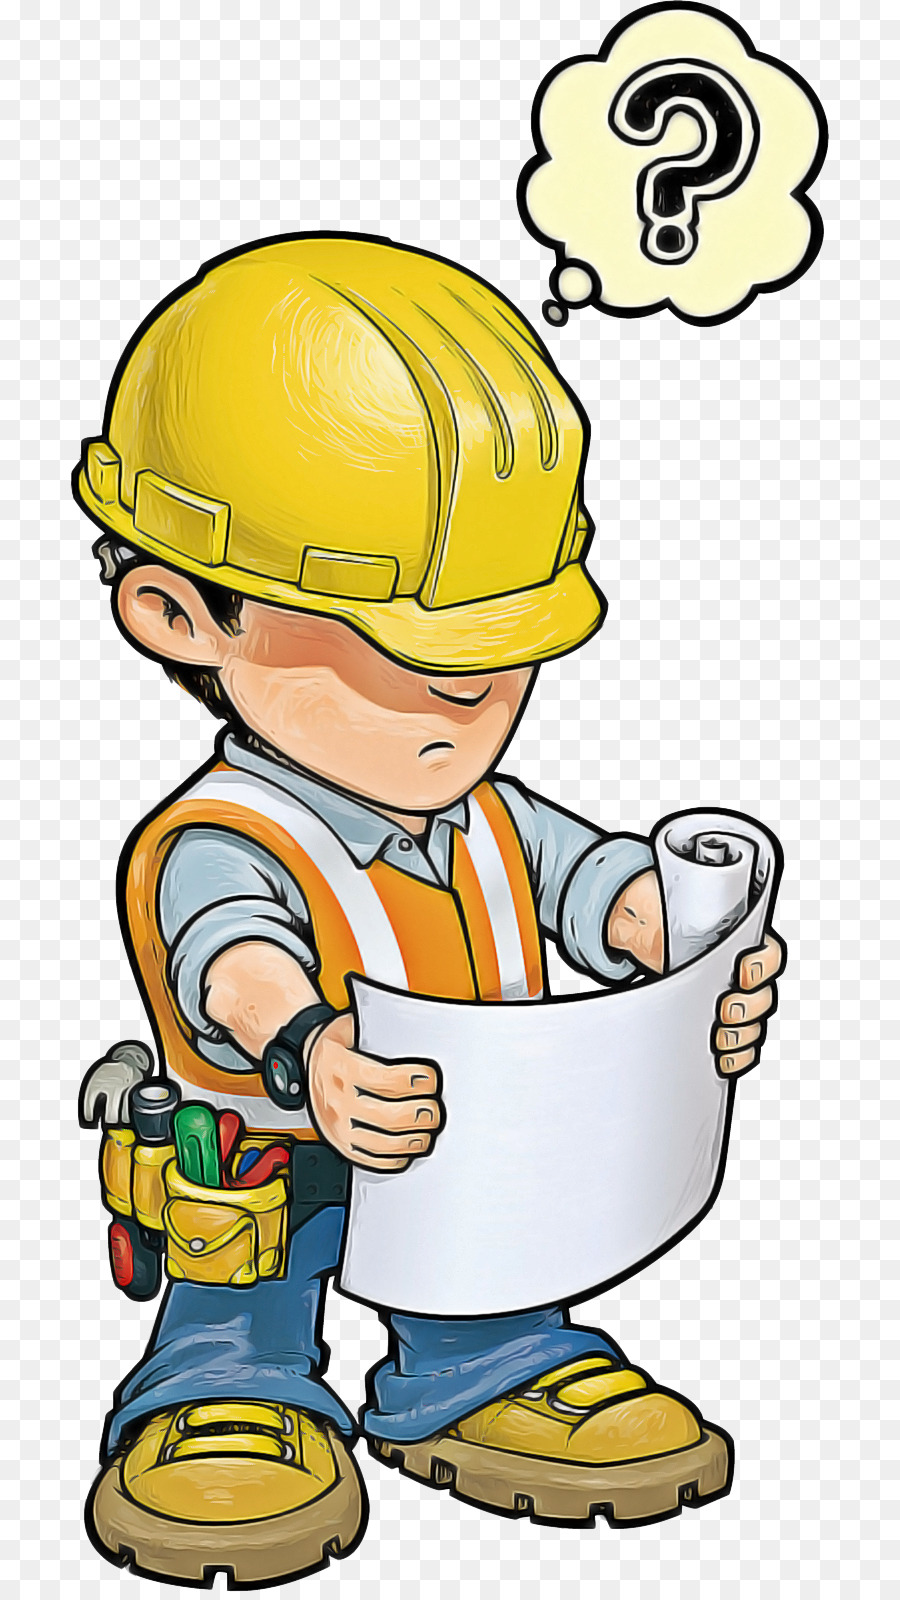 Clip art cartoon construction worker hard hat headgear png